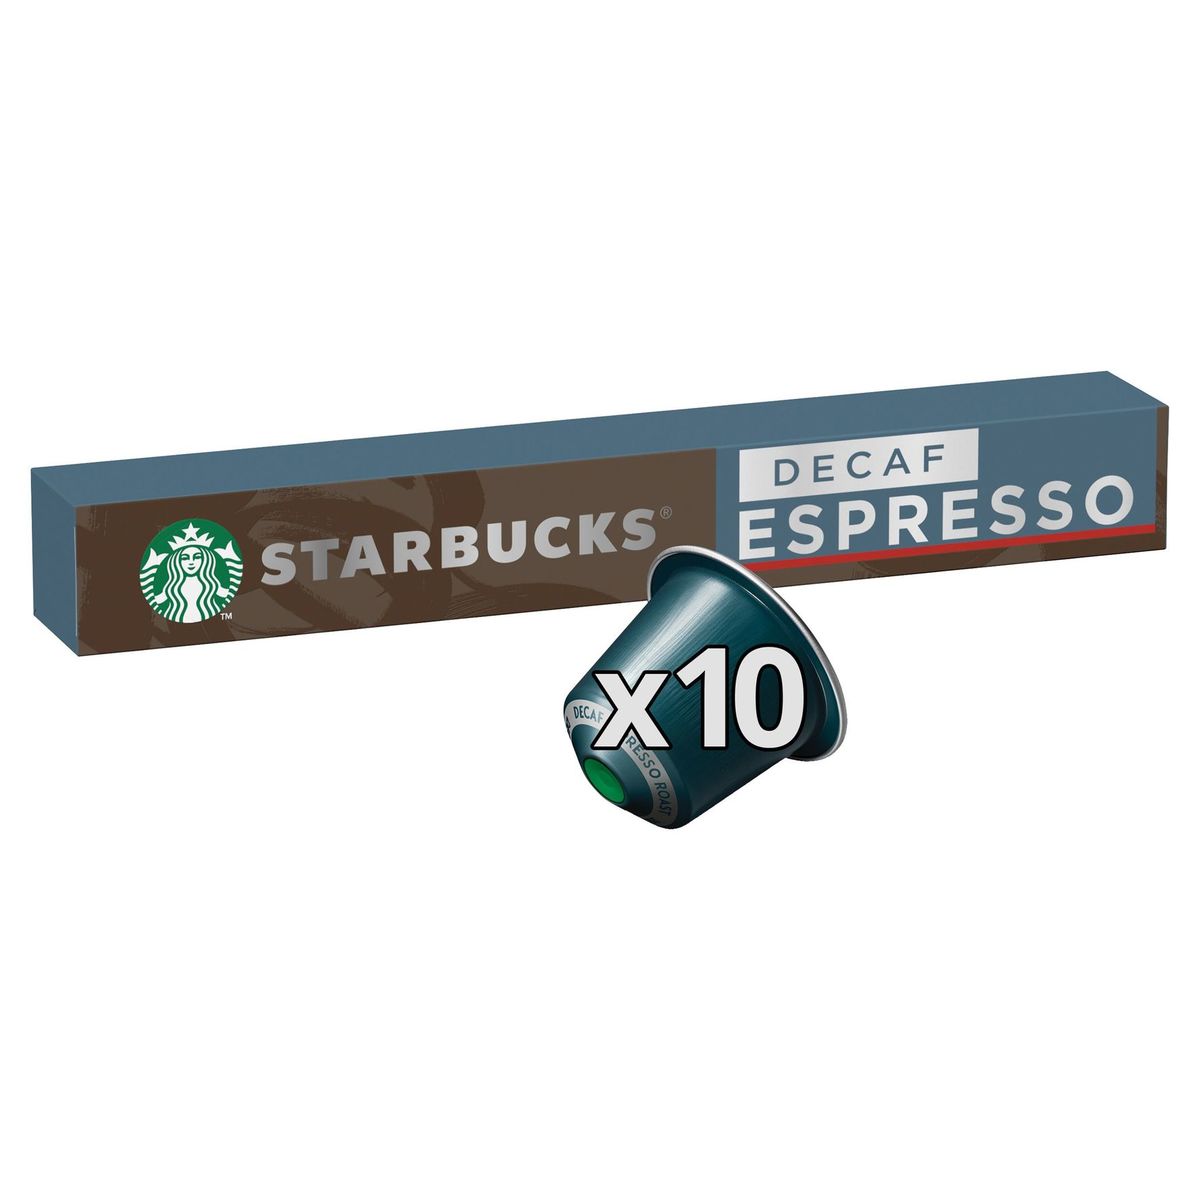 Café STARBUCKS by NESPRESSO Decaf Espresso Roast Décaféiné 10 capsules